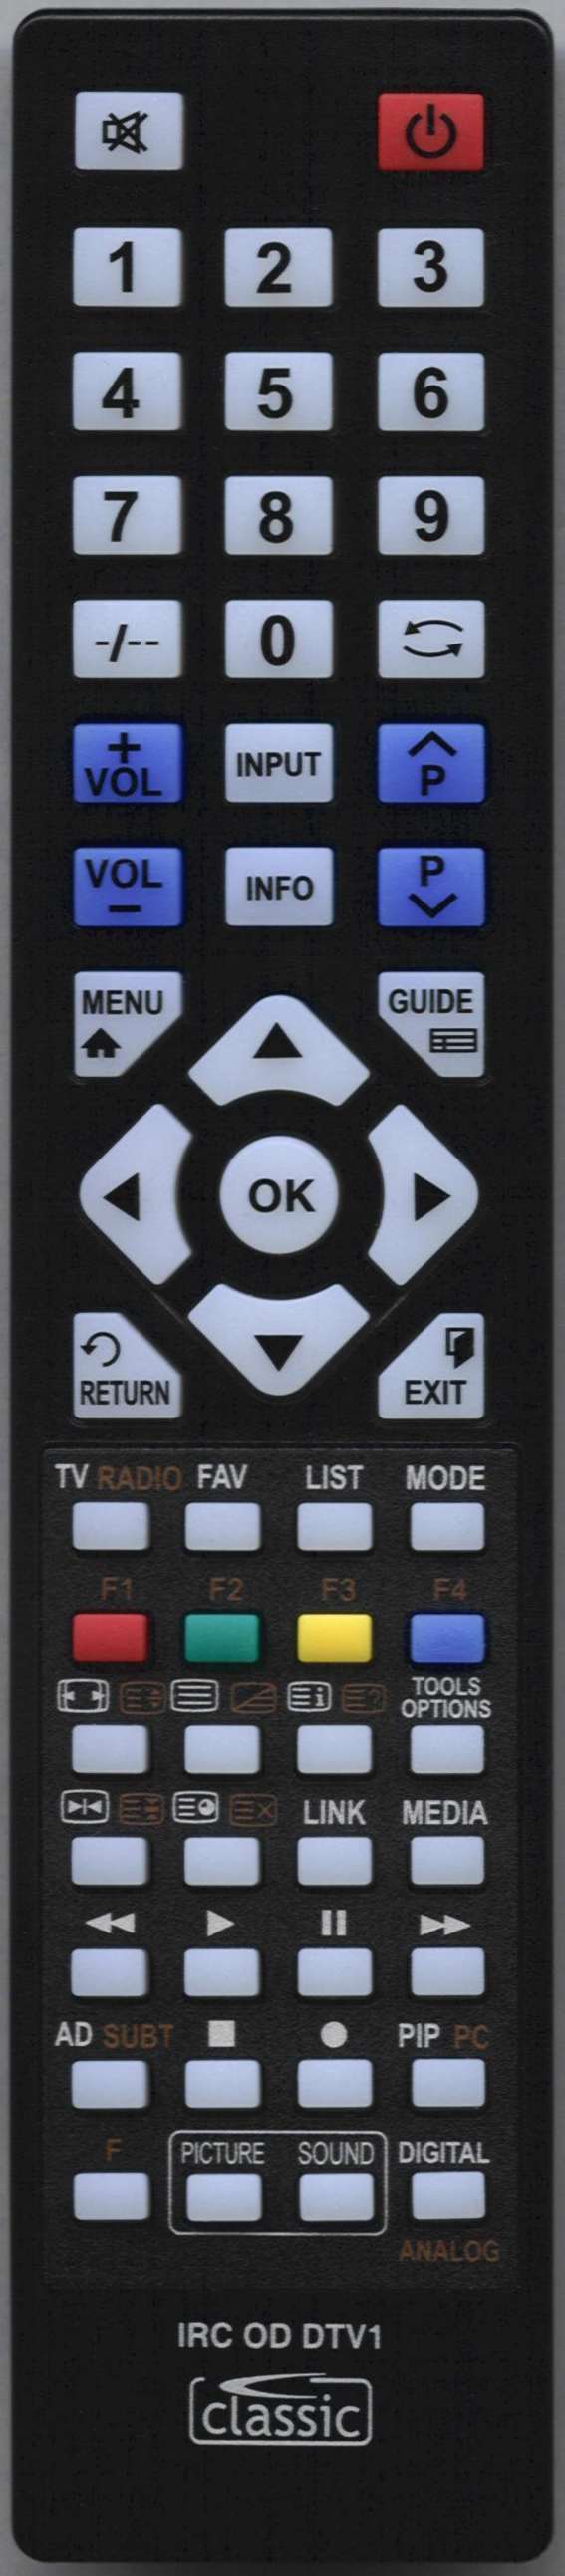 OKI B32F-LED1 Remote Control